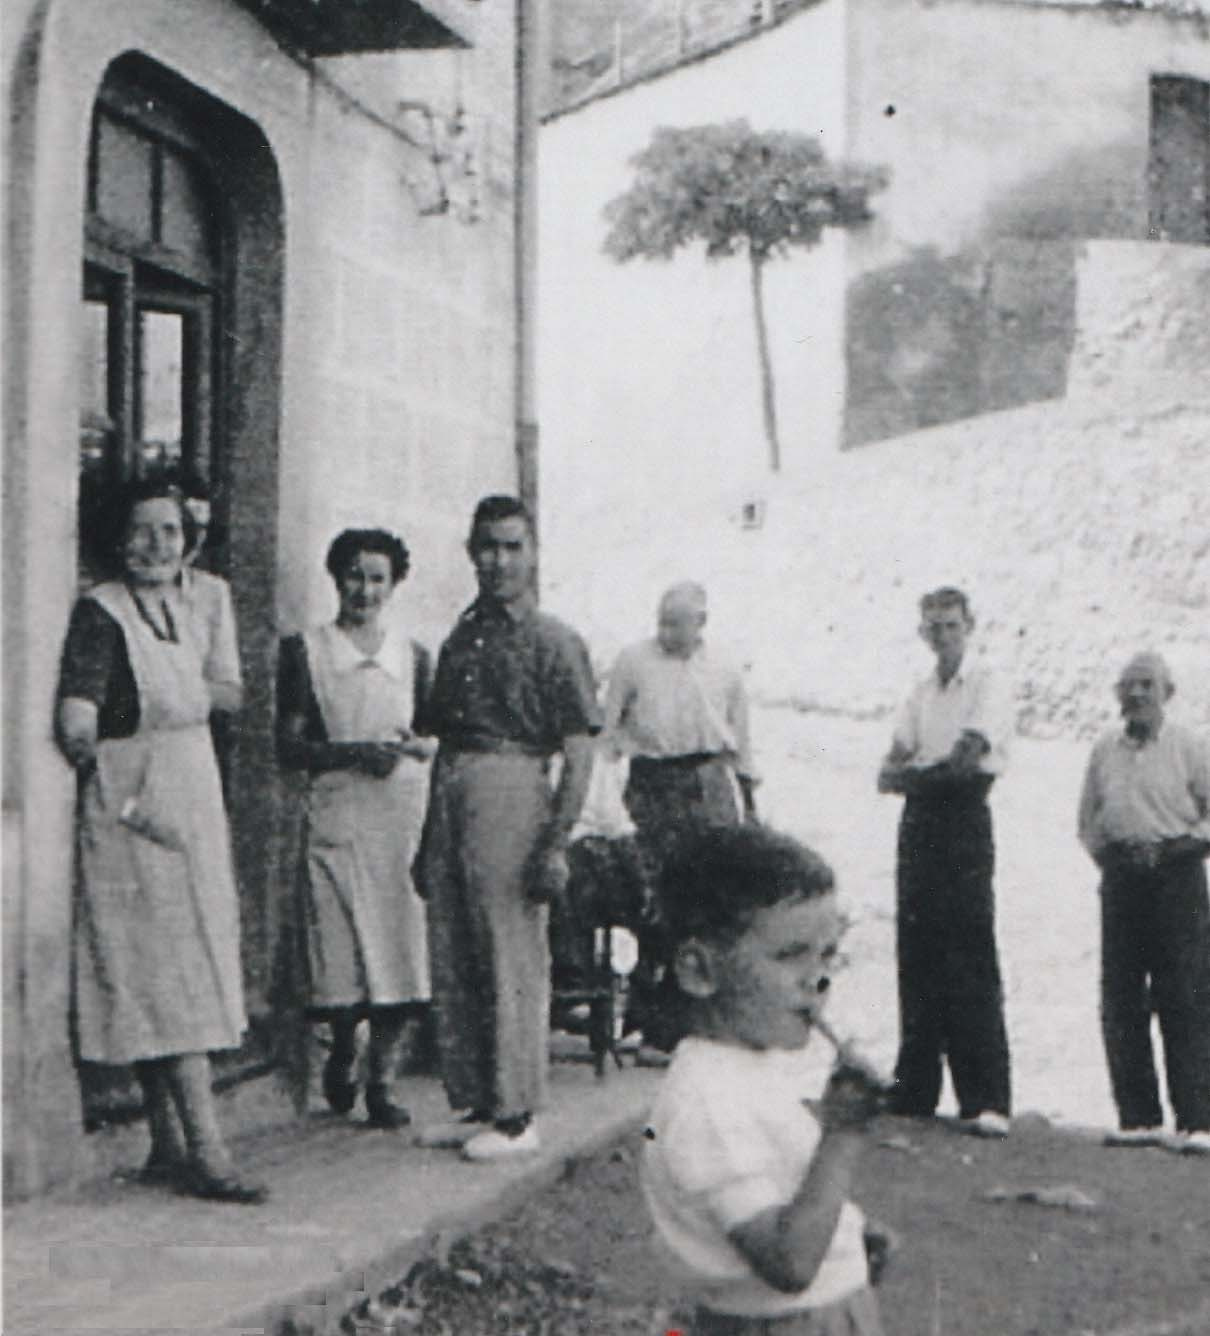 1946 l'Angeleta, la Rosaura i el Jaume del Cantó davant casa seva. El nen podria ser el Tonet del Cantó i dels quatre homes del darrere sols coneixem al Joan (Tano) de cal Rigol i al Quimet de ca la Florinda (vell).jpg